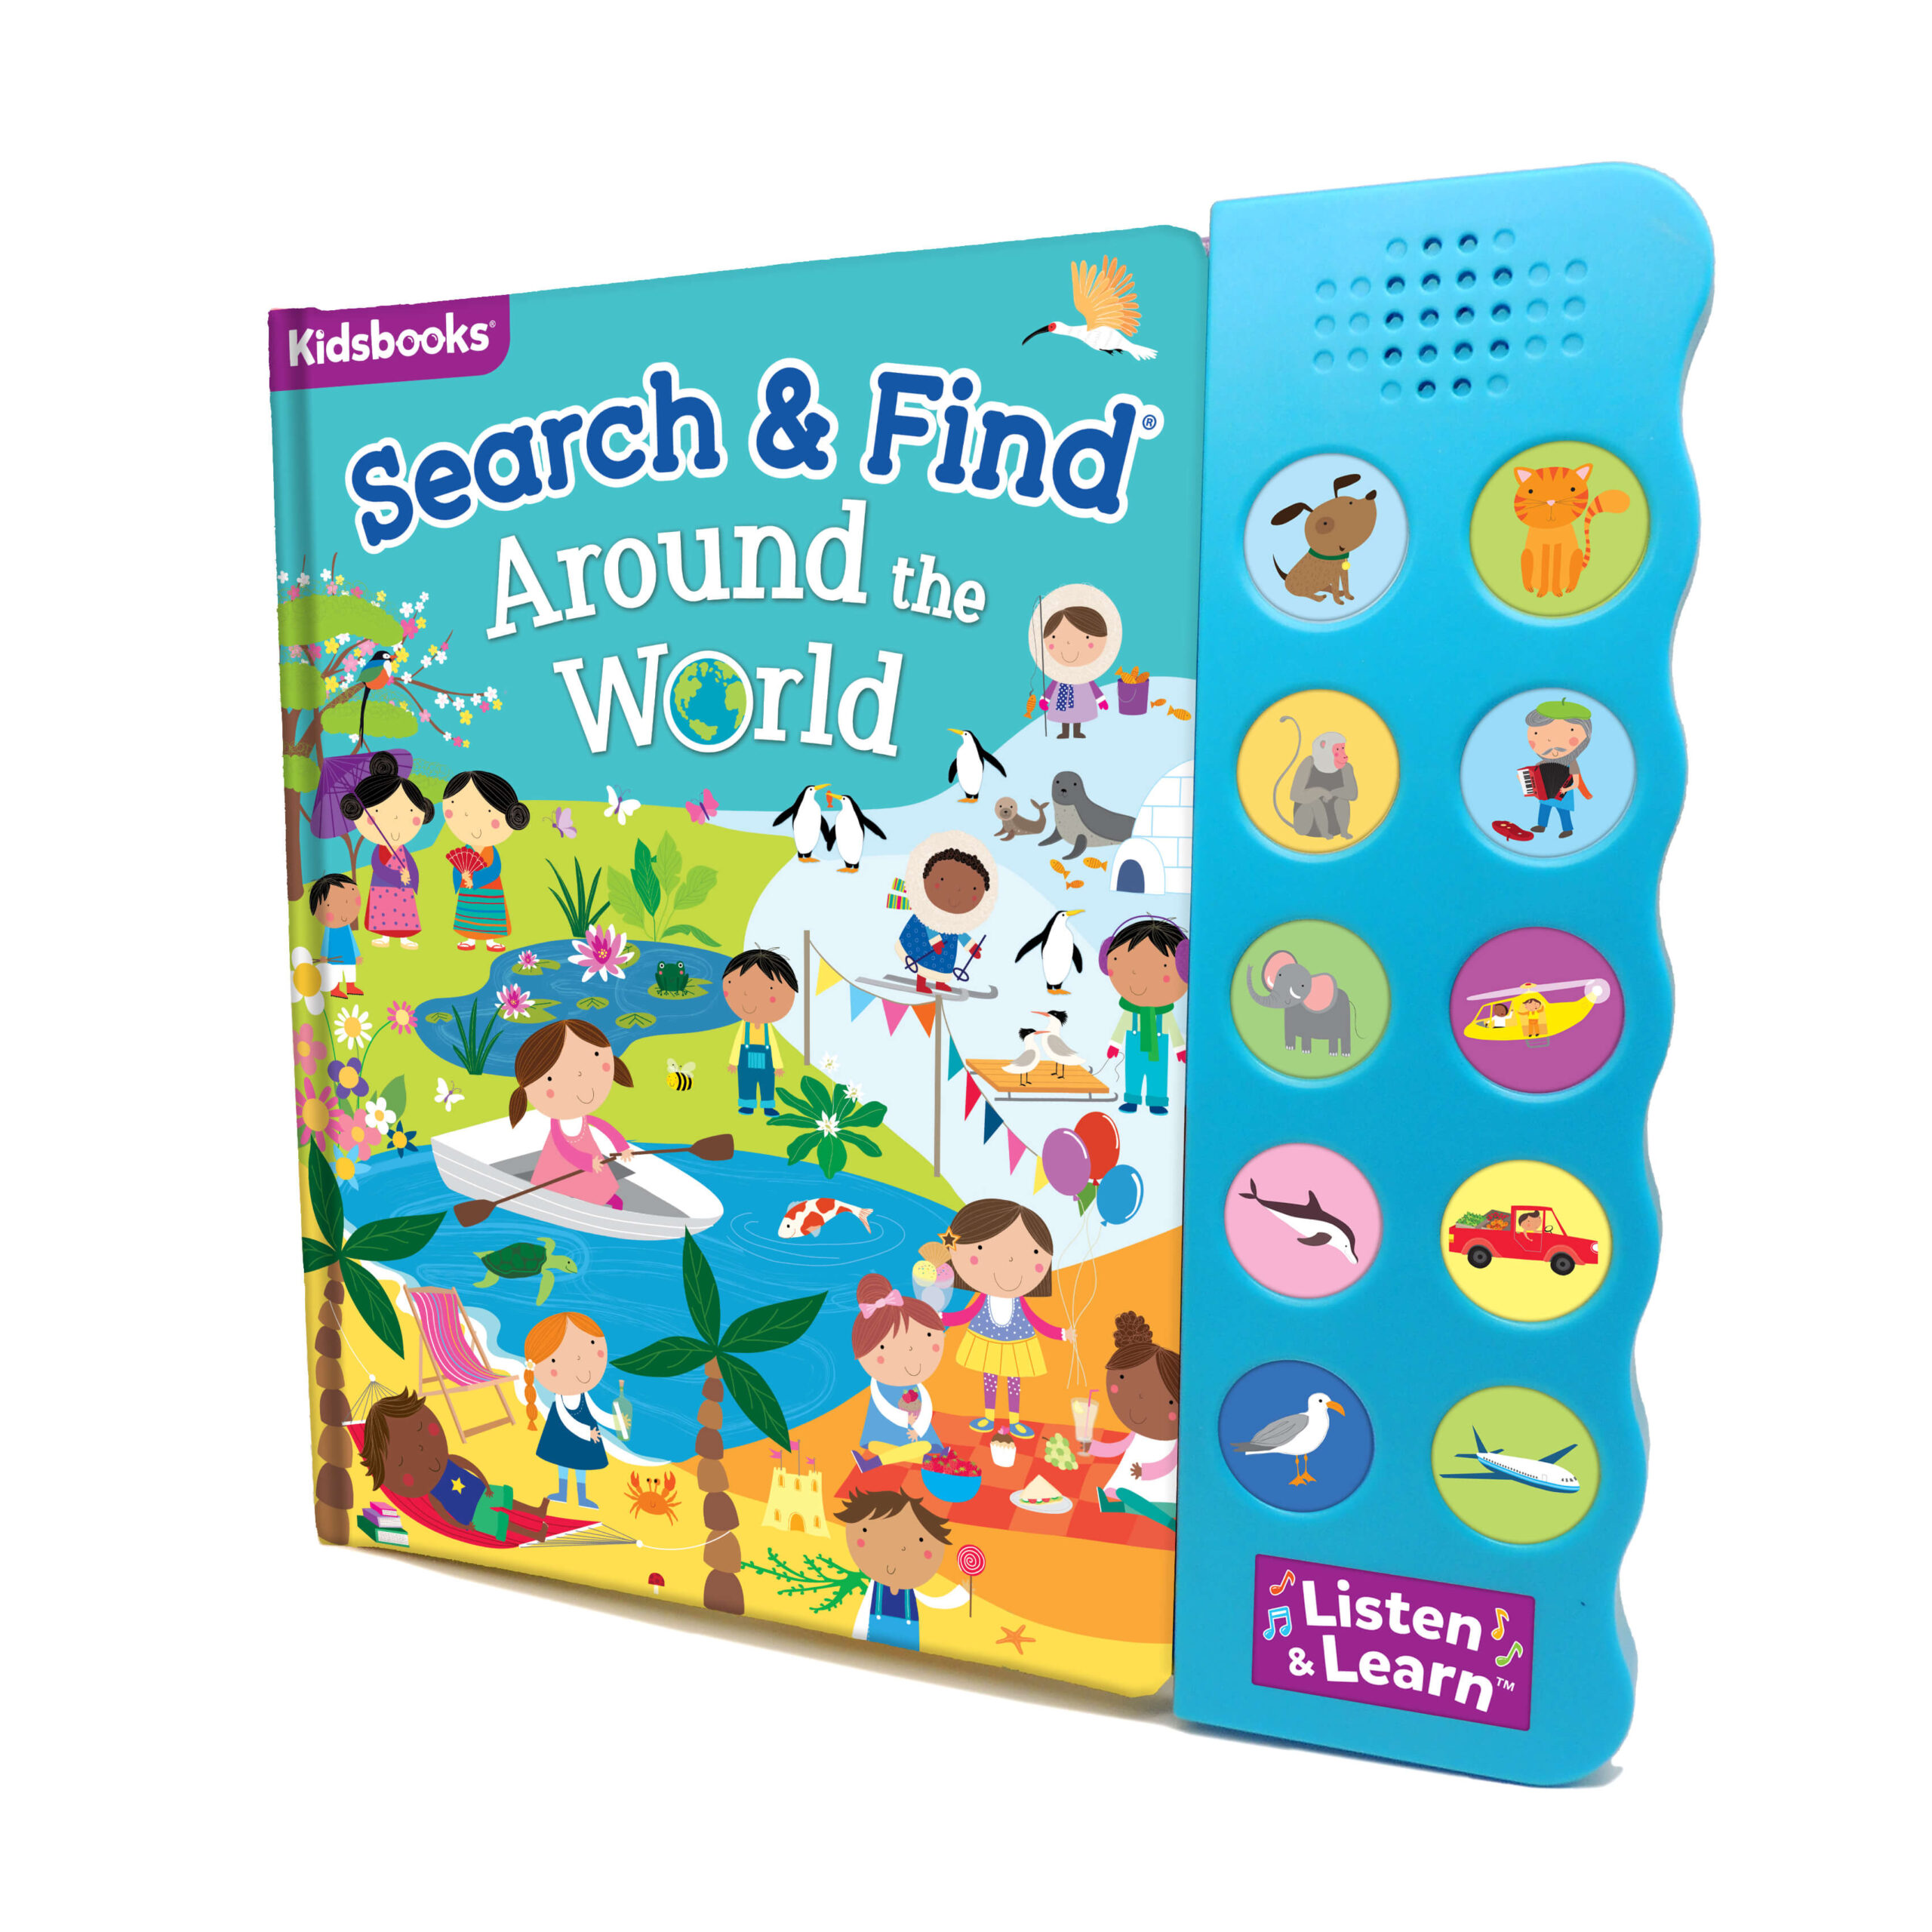 Search & Find Around The World